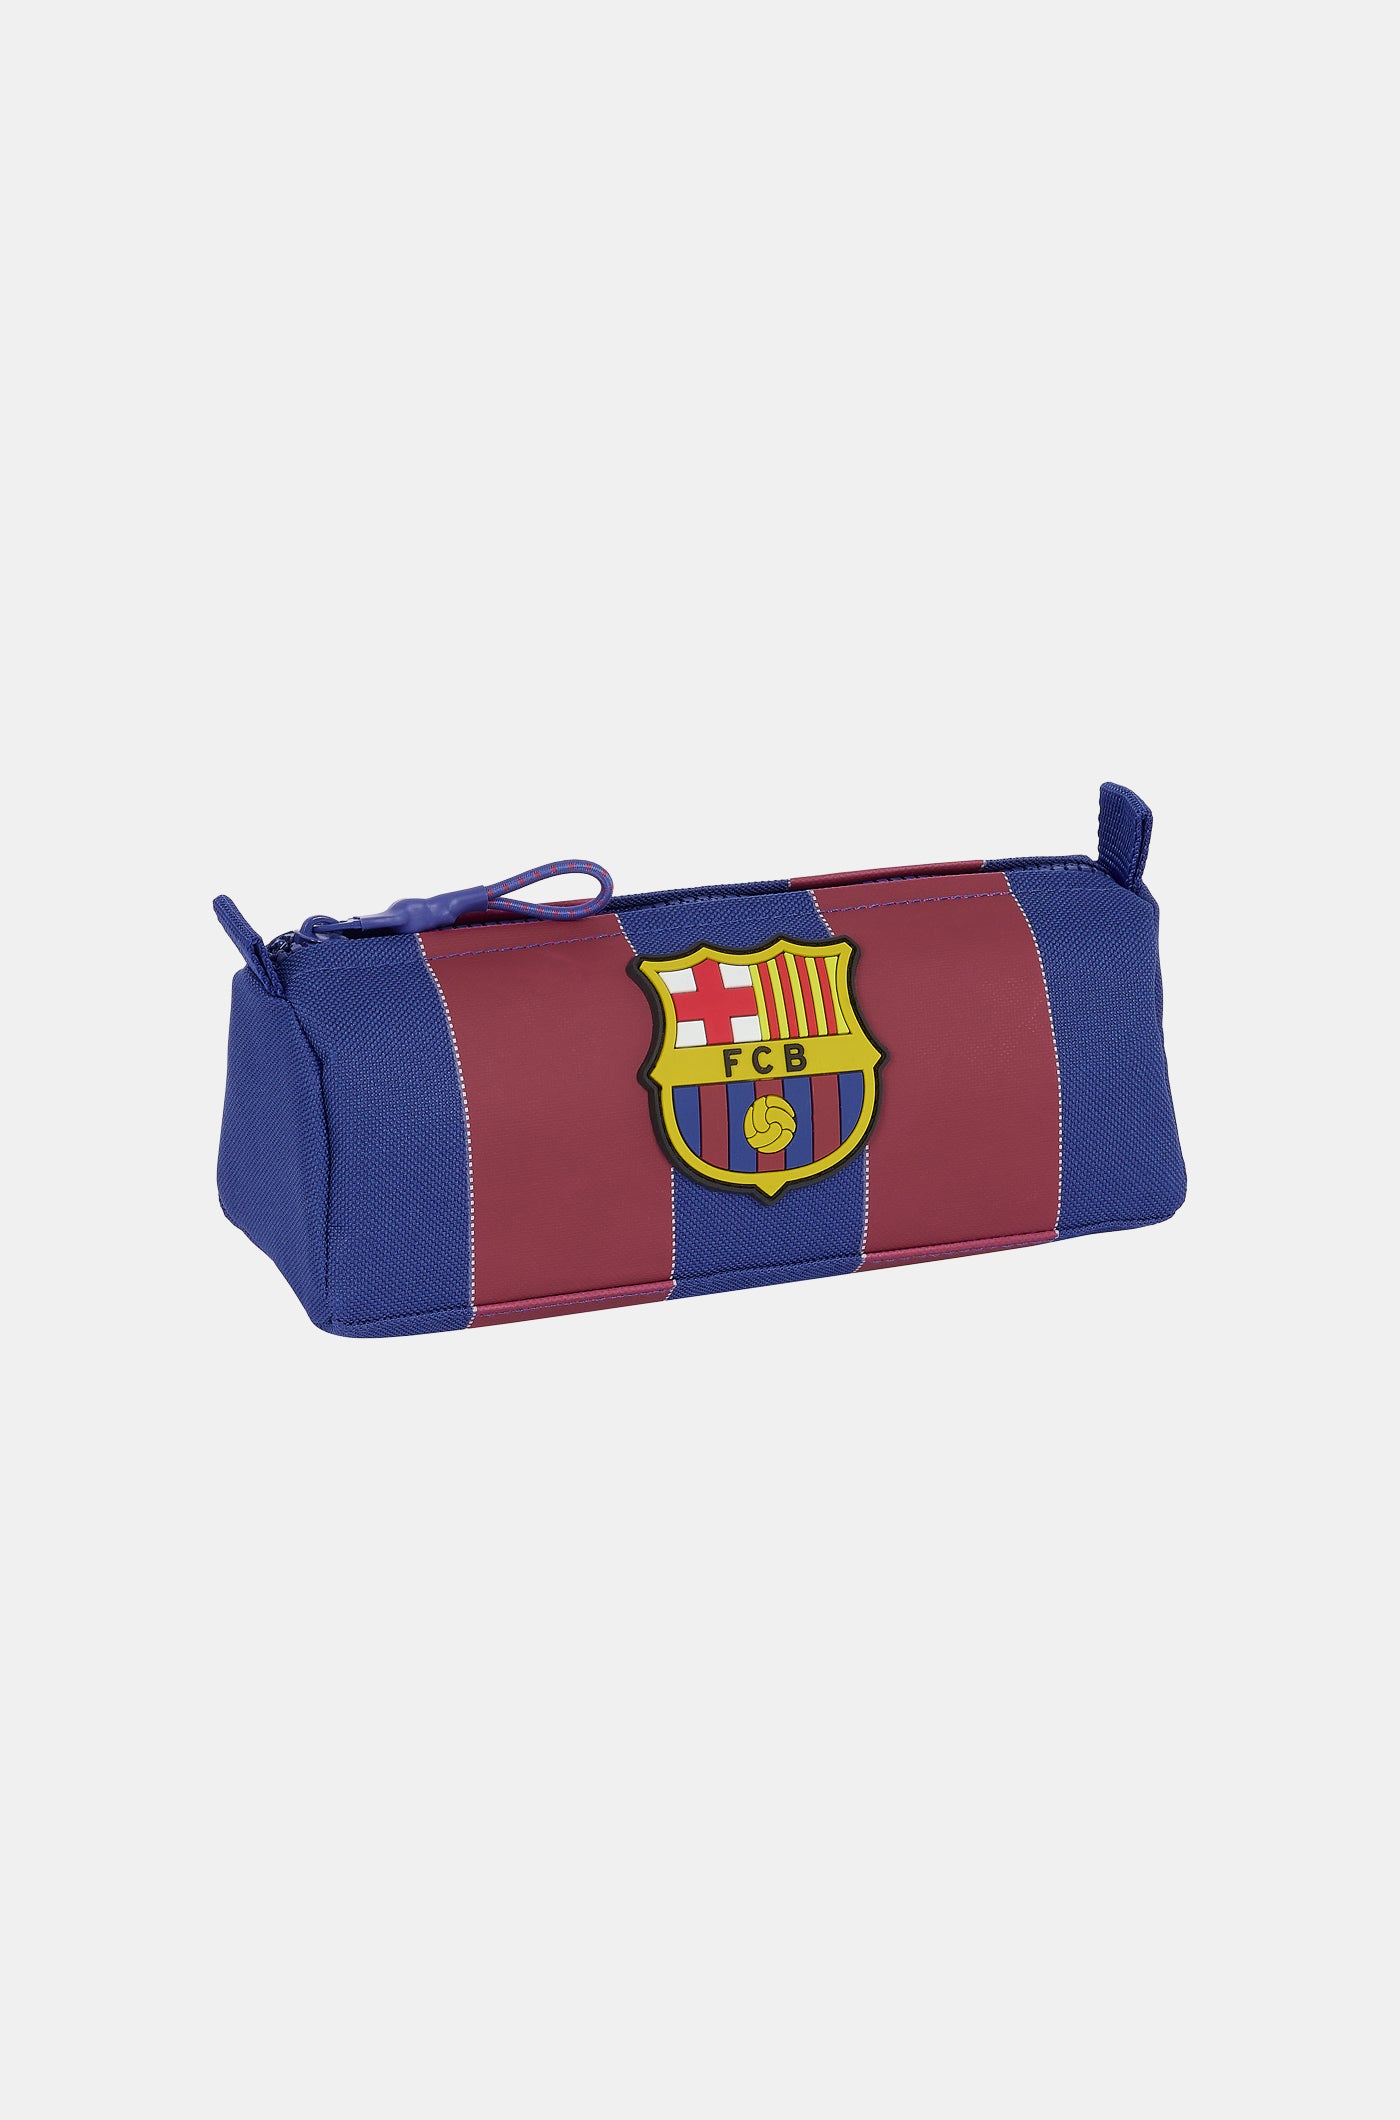 ▷ Regalos F.C. Barcelona ⚽️ Productos 100% Oficiales y Originales ✓